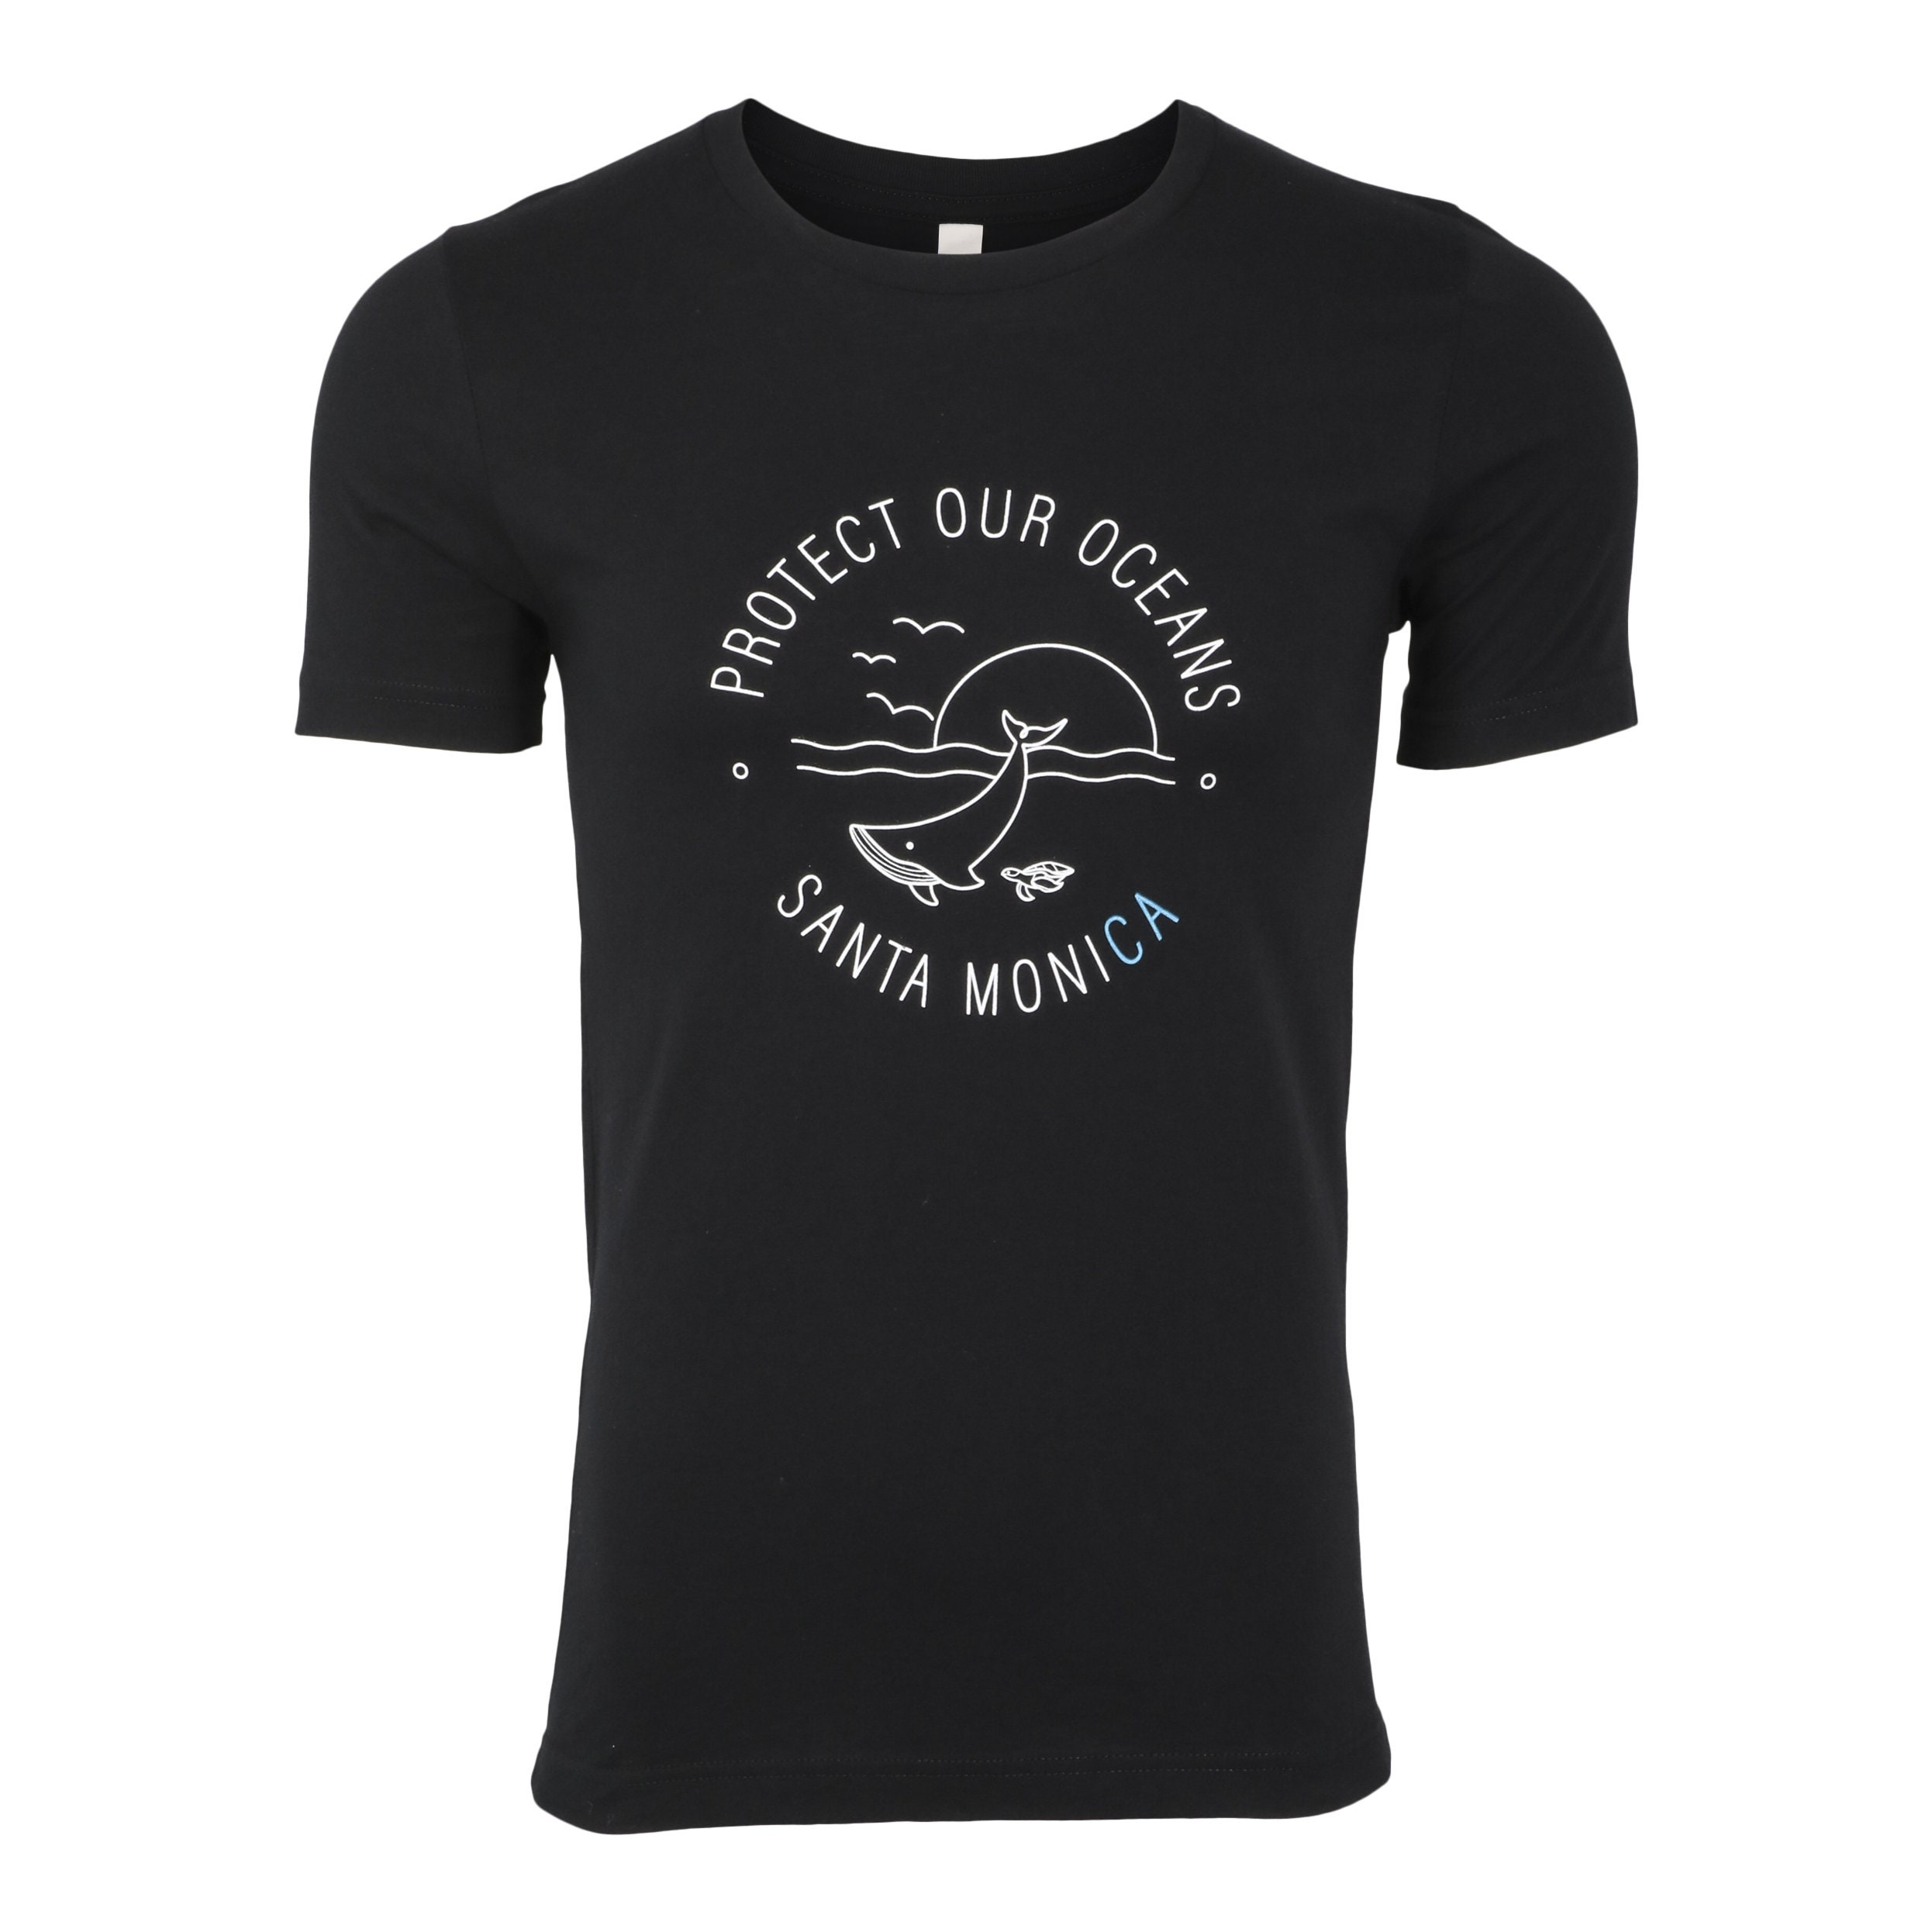 Protect Our Oceans Tee Unisex Crewneck Shirt Santa Monica - Etsy.de